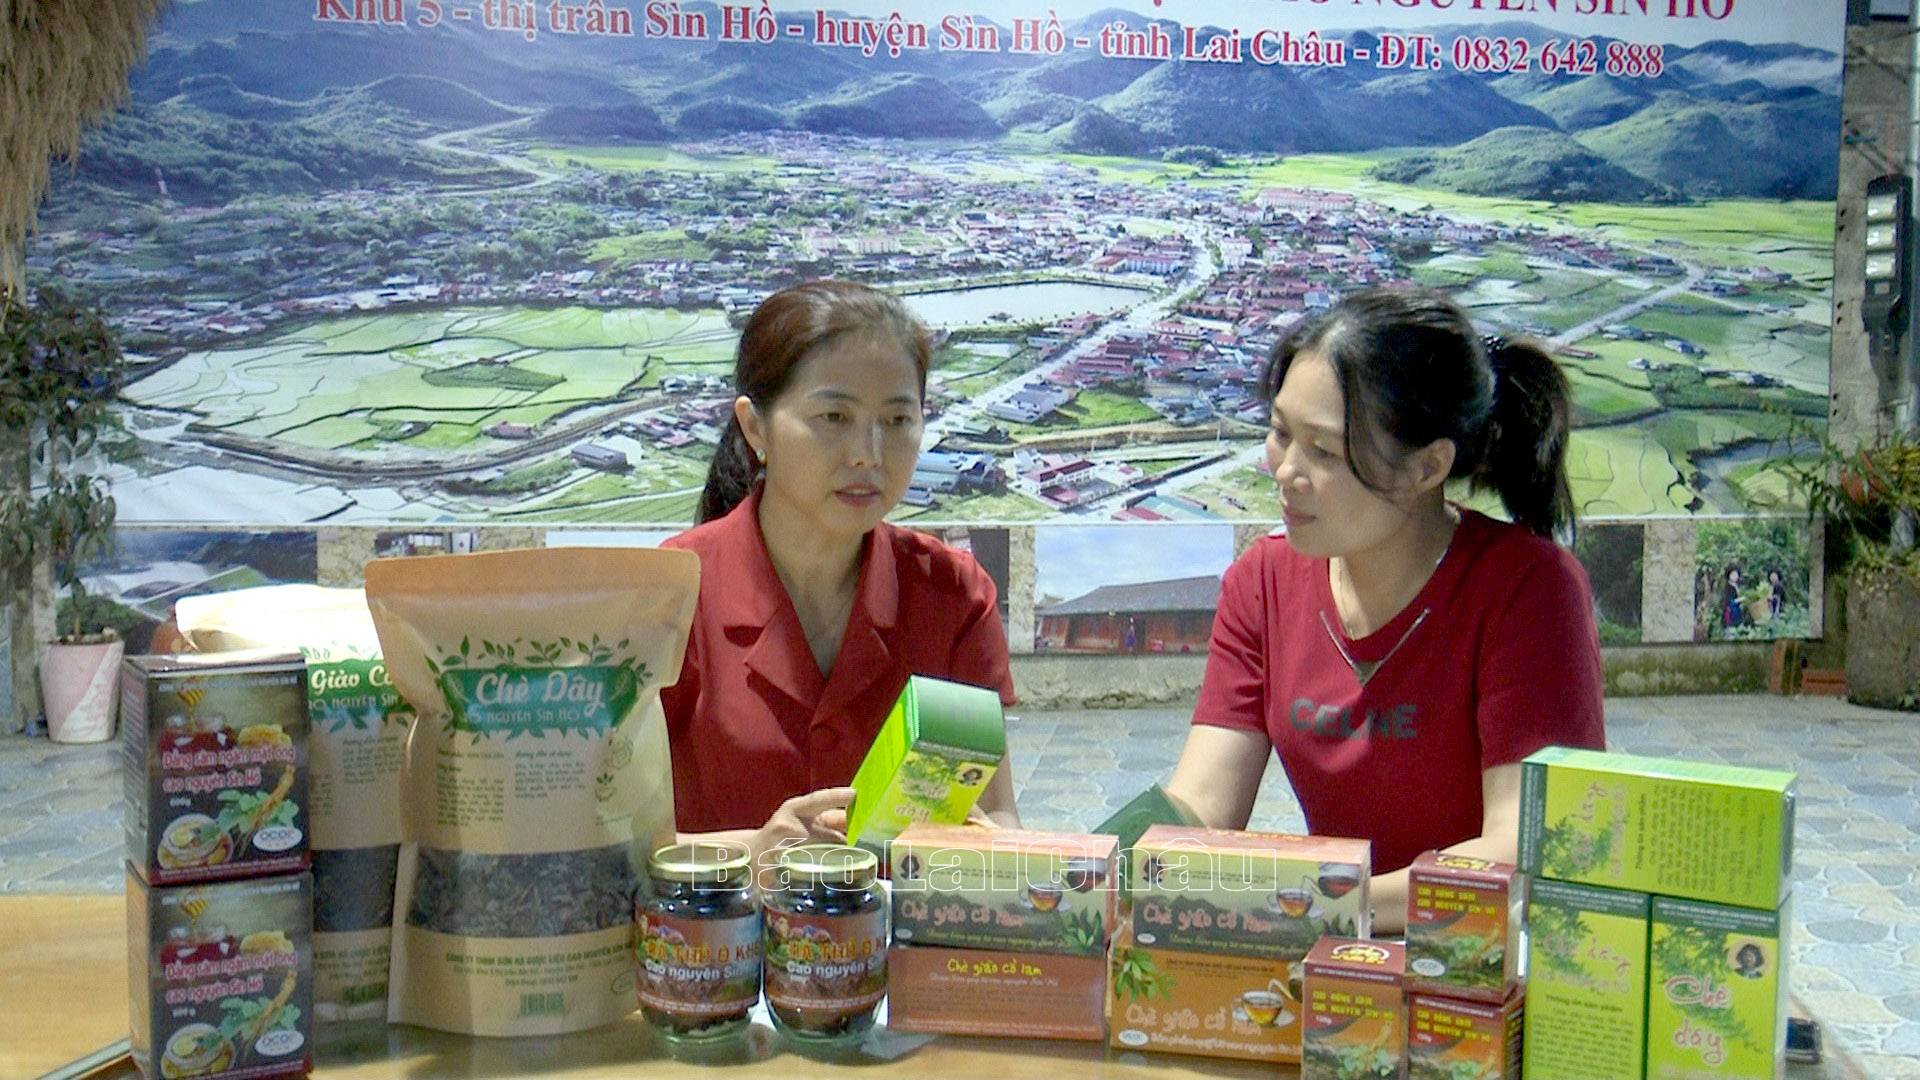 Chị Chẻo Thị Hà – Công ty TNHH Sơn Hà dược liệu cao nguyên Sìn Hồ, khu 5, thị trấn Sìn Hồ, huyện Sìn Hồ giới thiệu các sản phẩm OCOP.